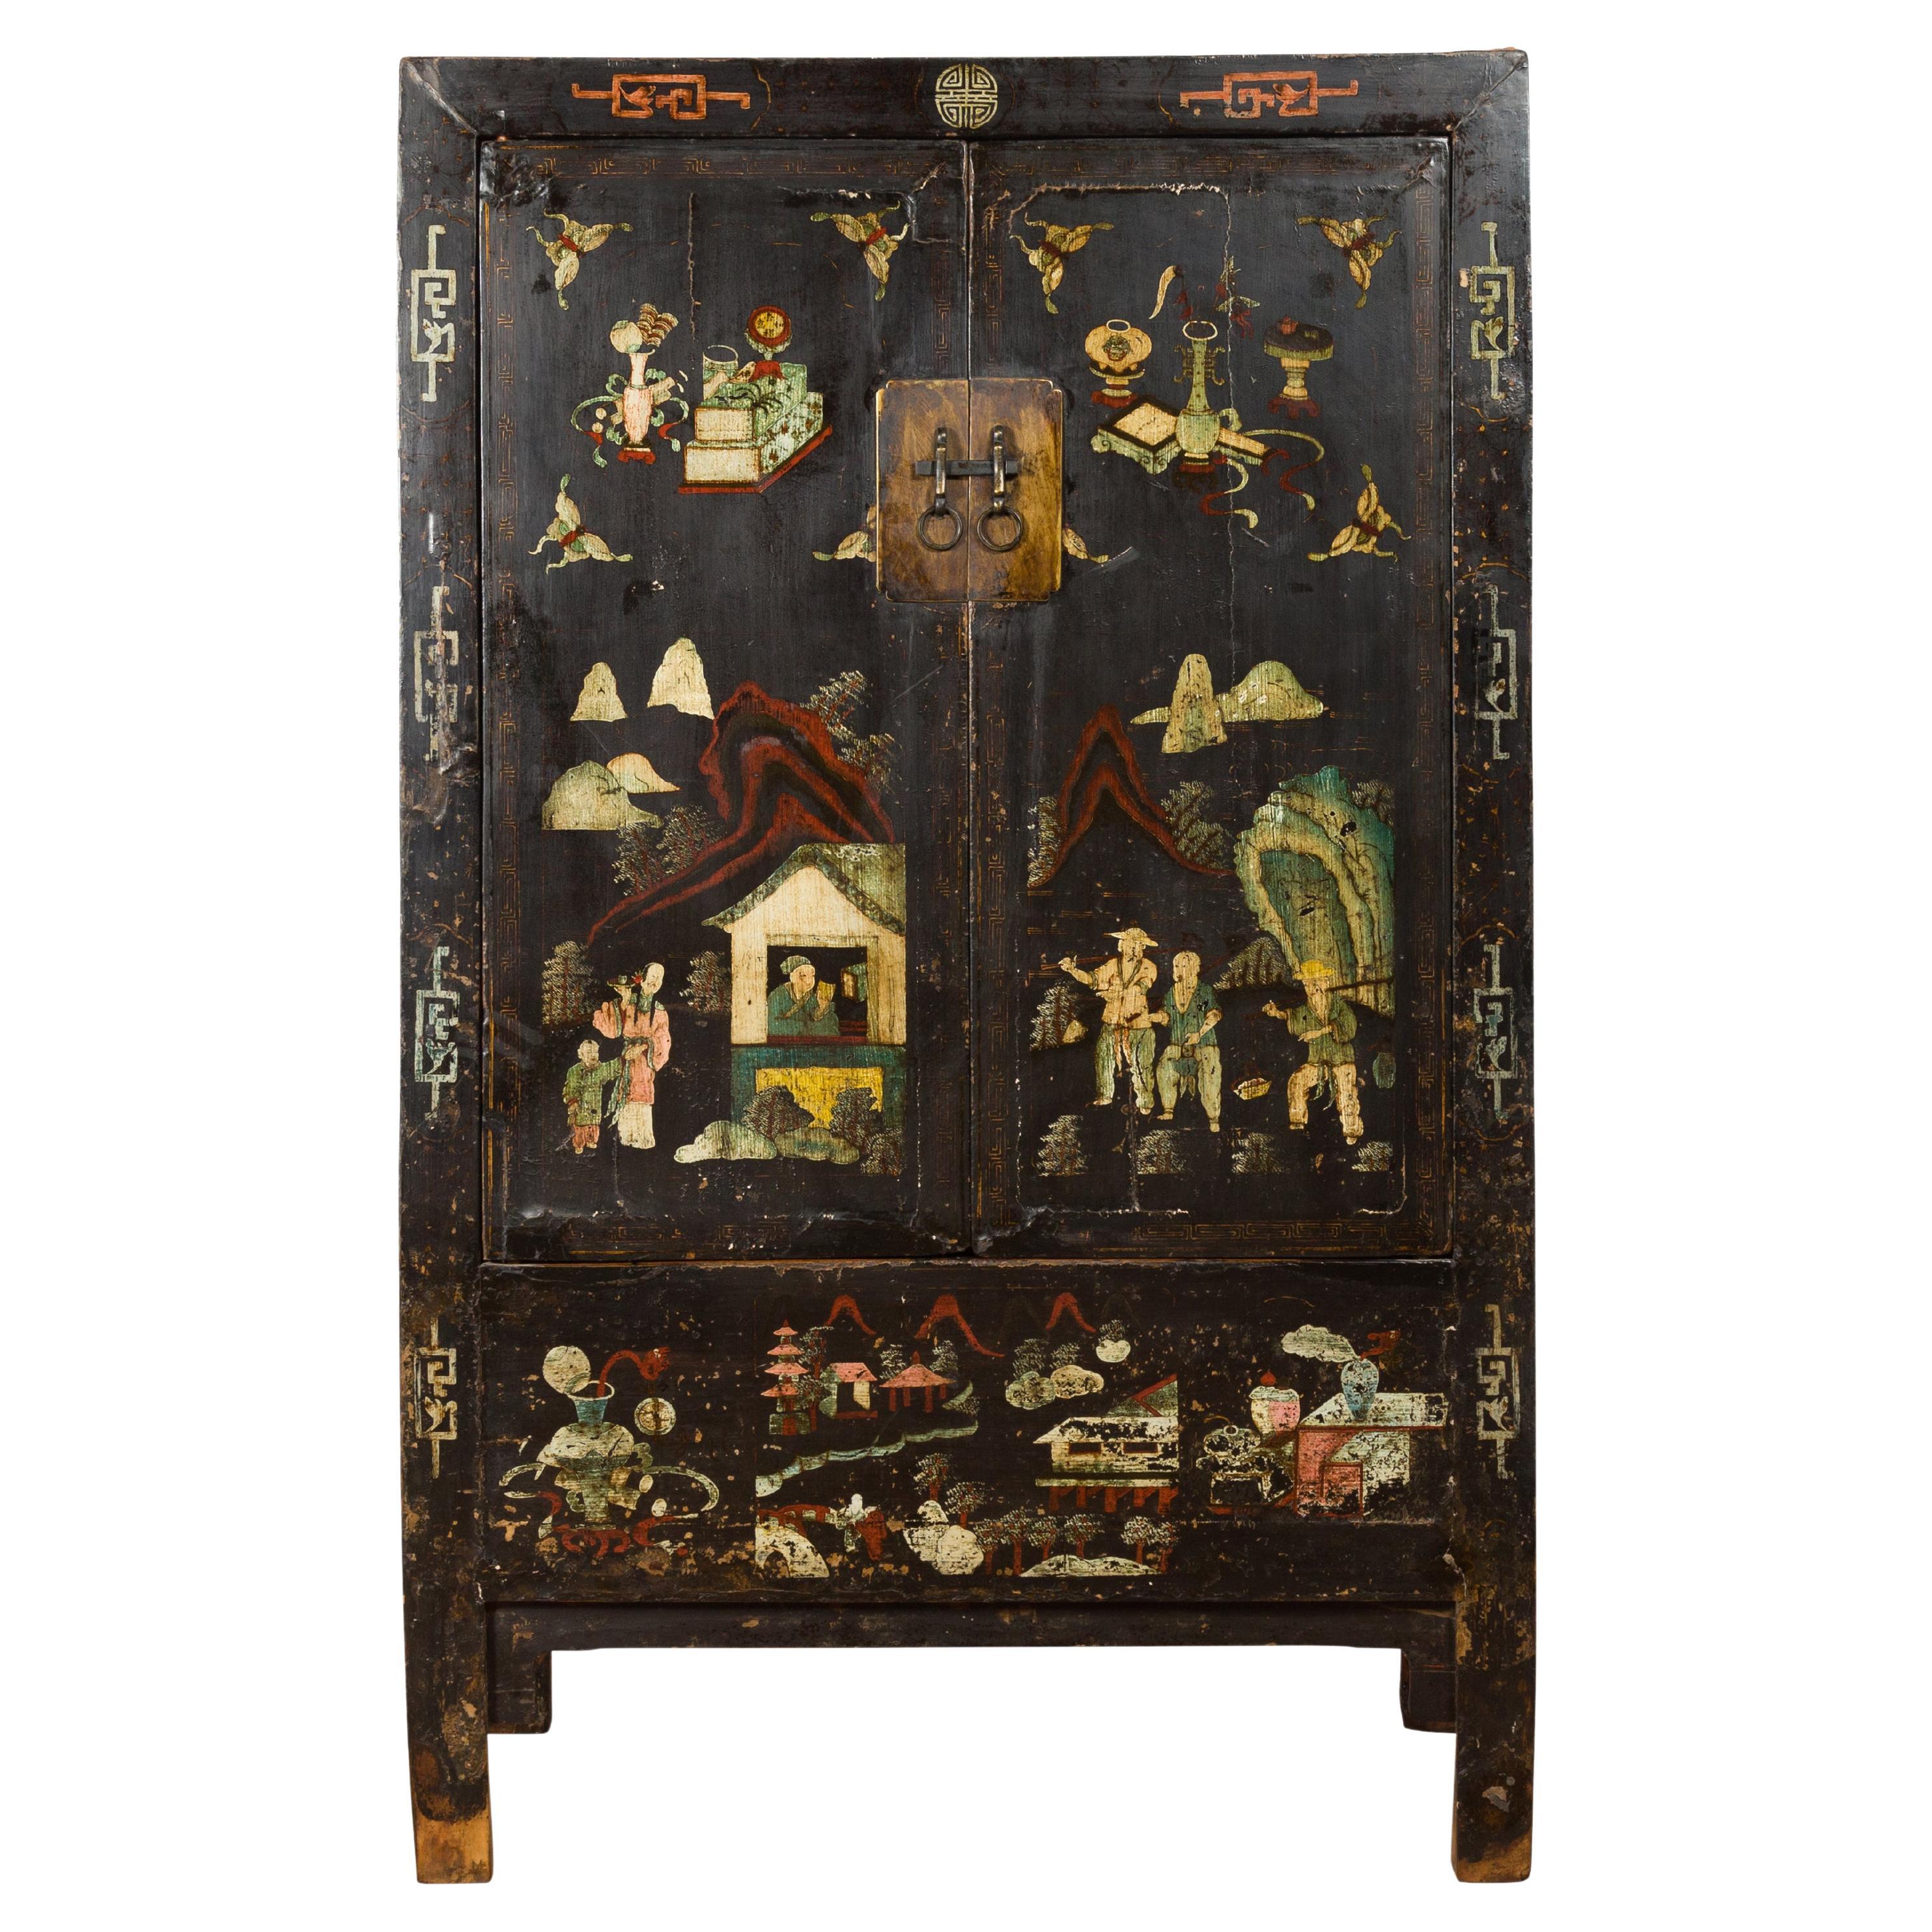 Chinesische Qing-Dynastie 19. Jahrhundert Shanxi Kabinett mit original schwarzem Lack